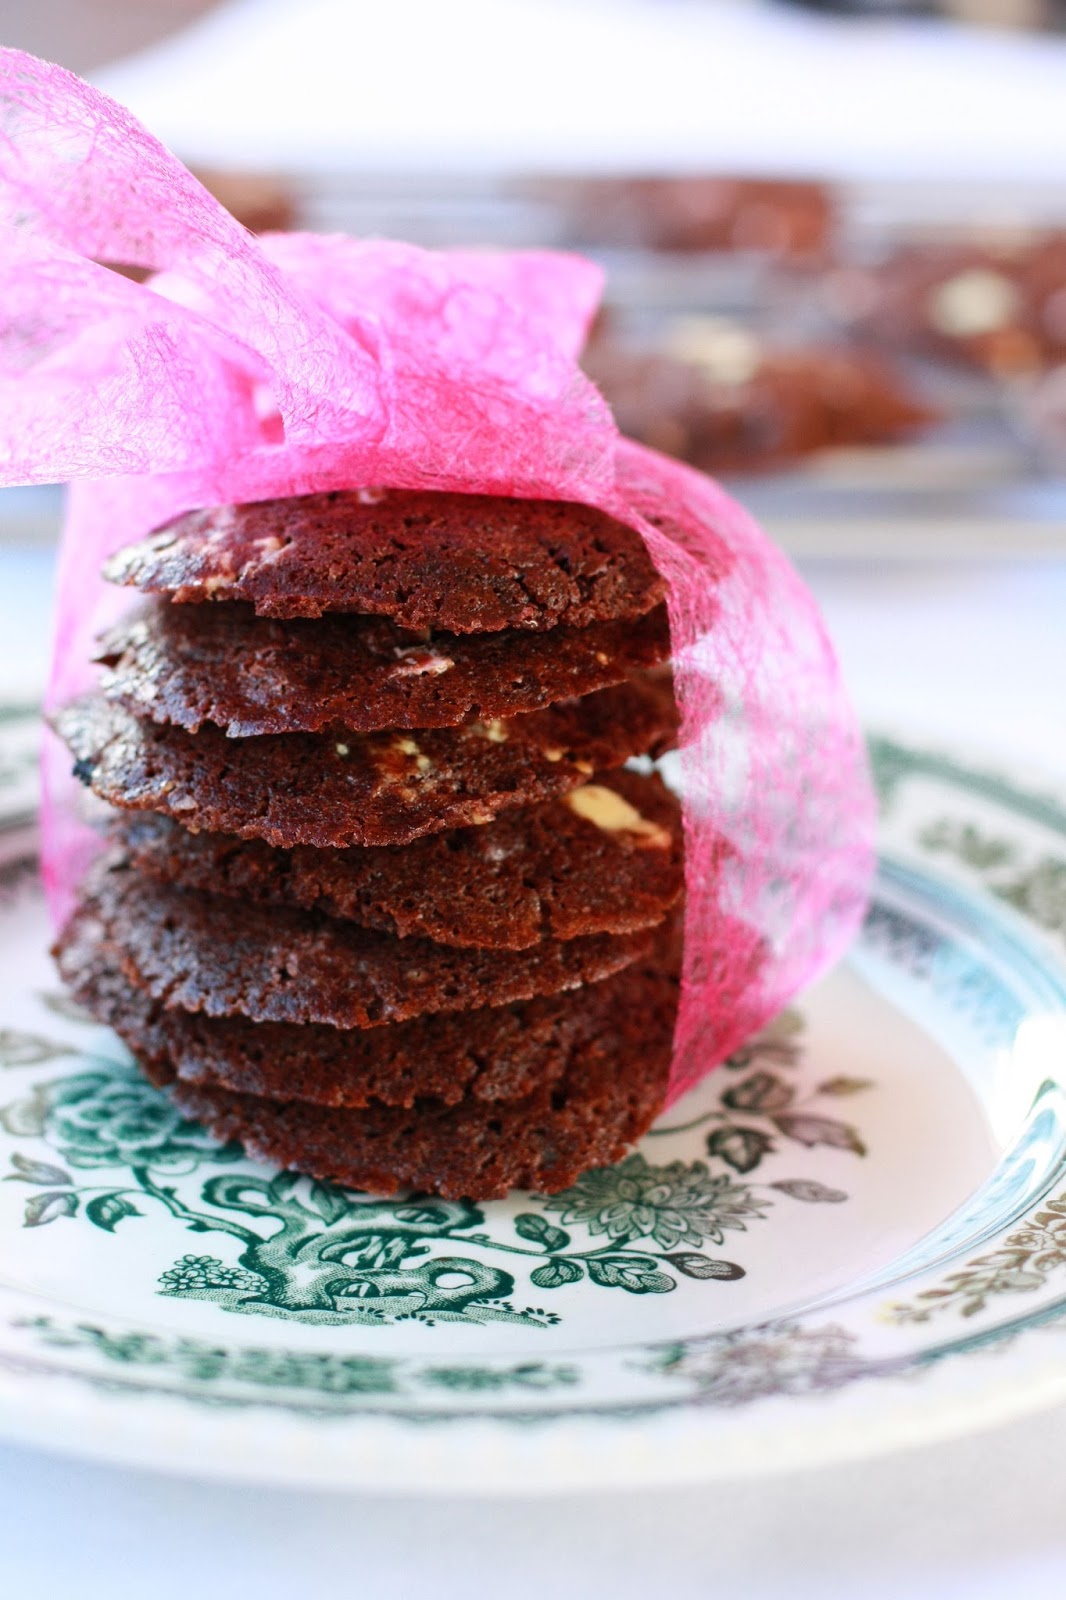 neljän suklaan suklaacookiet suklaakeksit keksi pikkuleipä cookie suklaa mallaspulla leivonta resepti